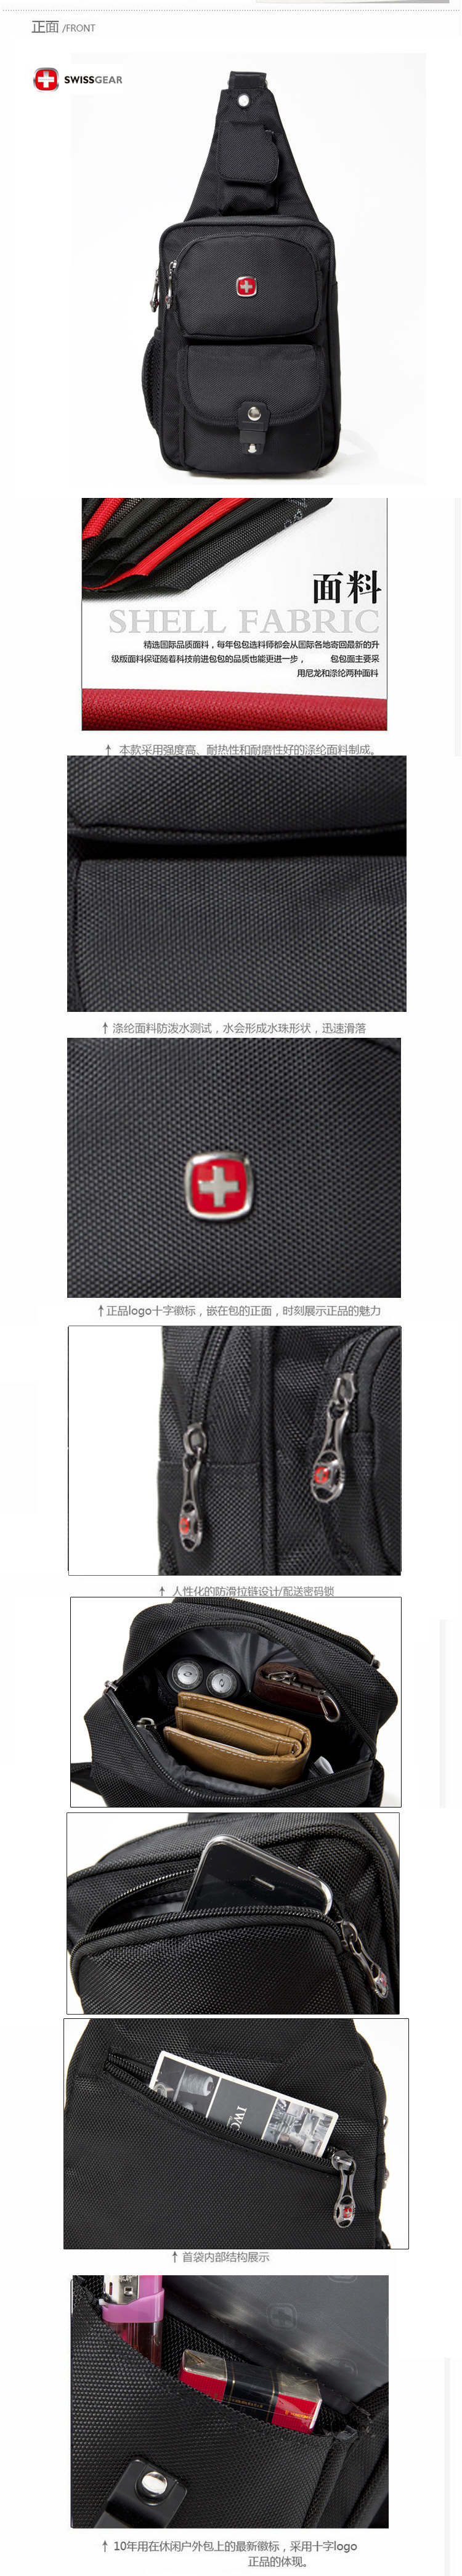 瑞士军刀品牌包单肩包 旅行胸包 轻巧包迷你包包 多色  情侣包